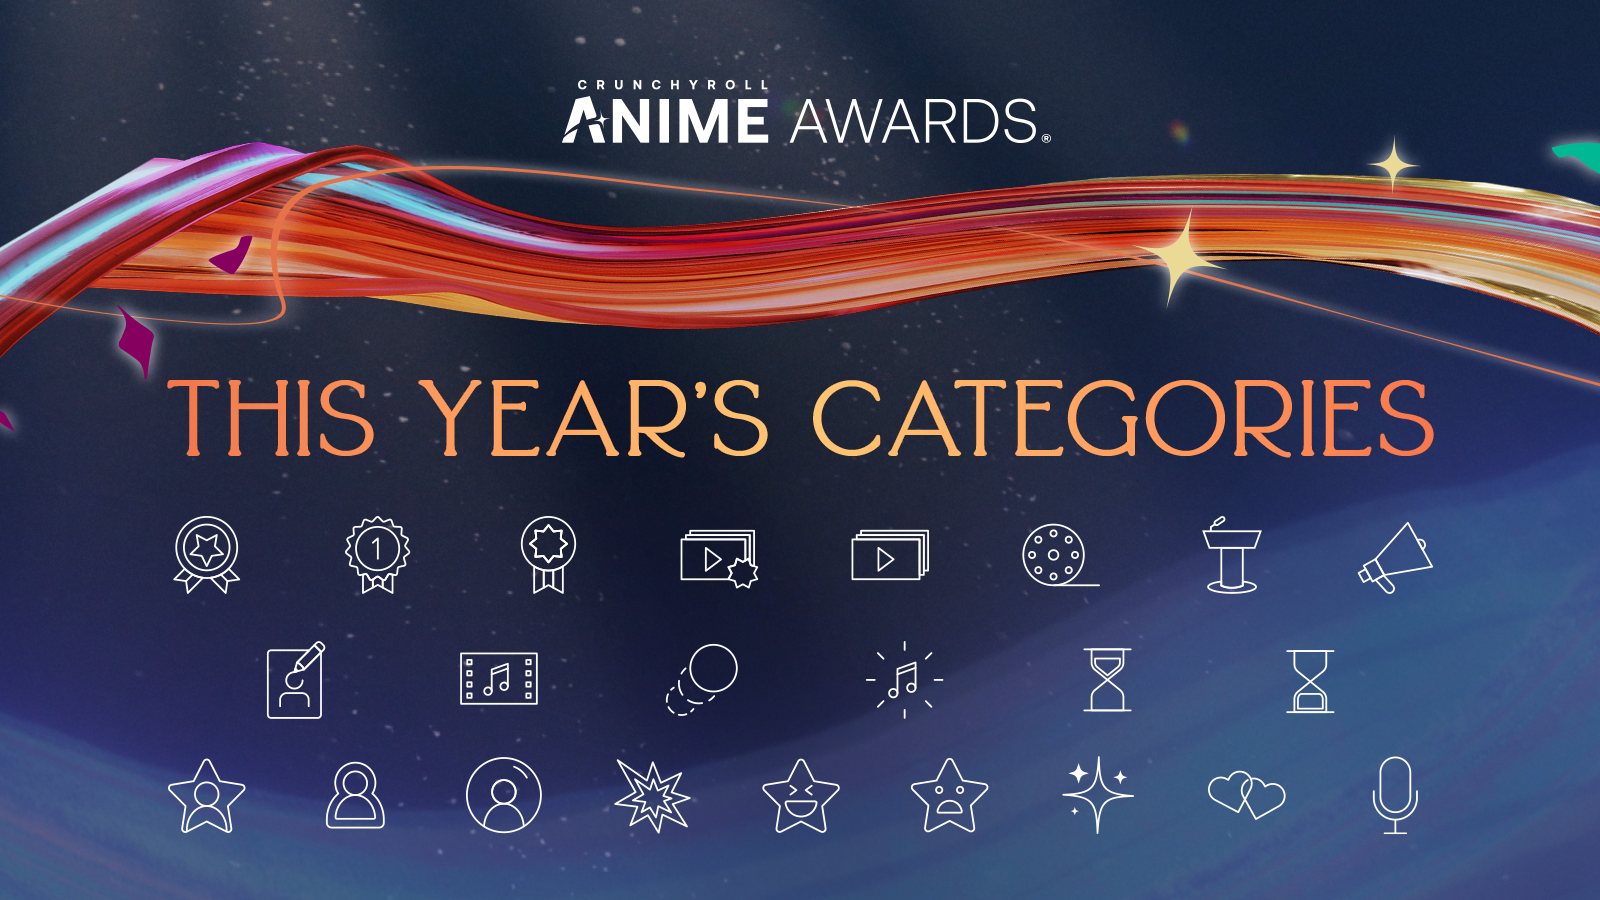 Crunchyroll Announces 5th Anime Awards Winners!